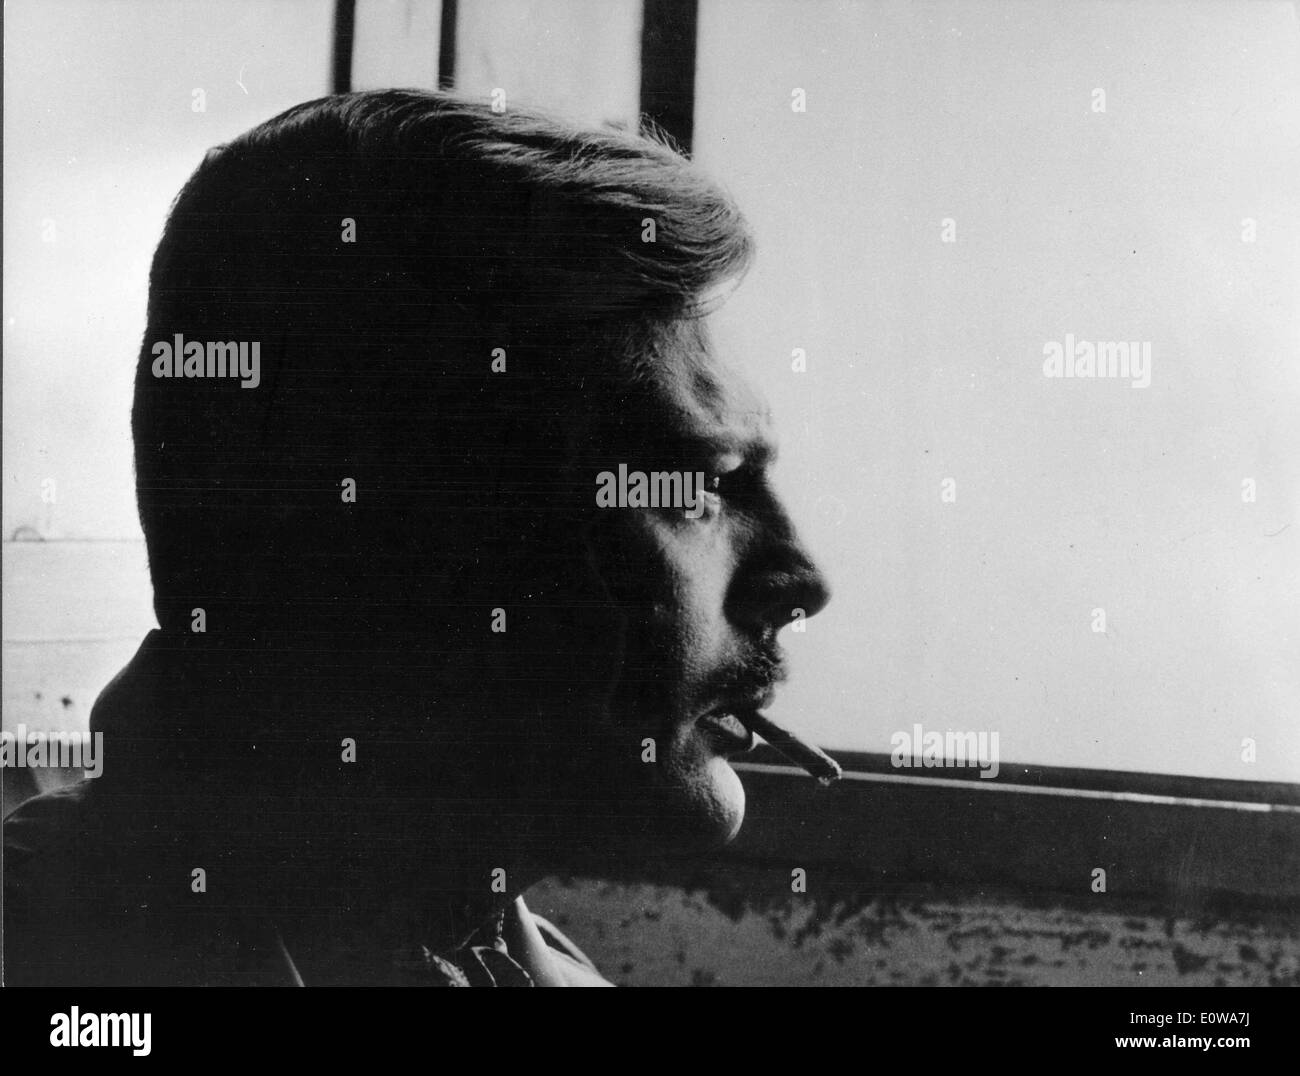 Portrait of actor Marcello Mastroianni smoking a cigarette Stock Photo